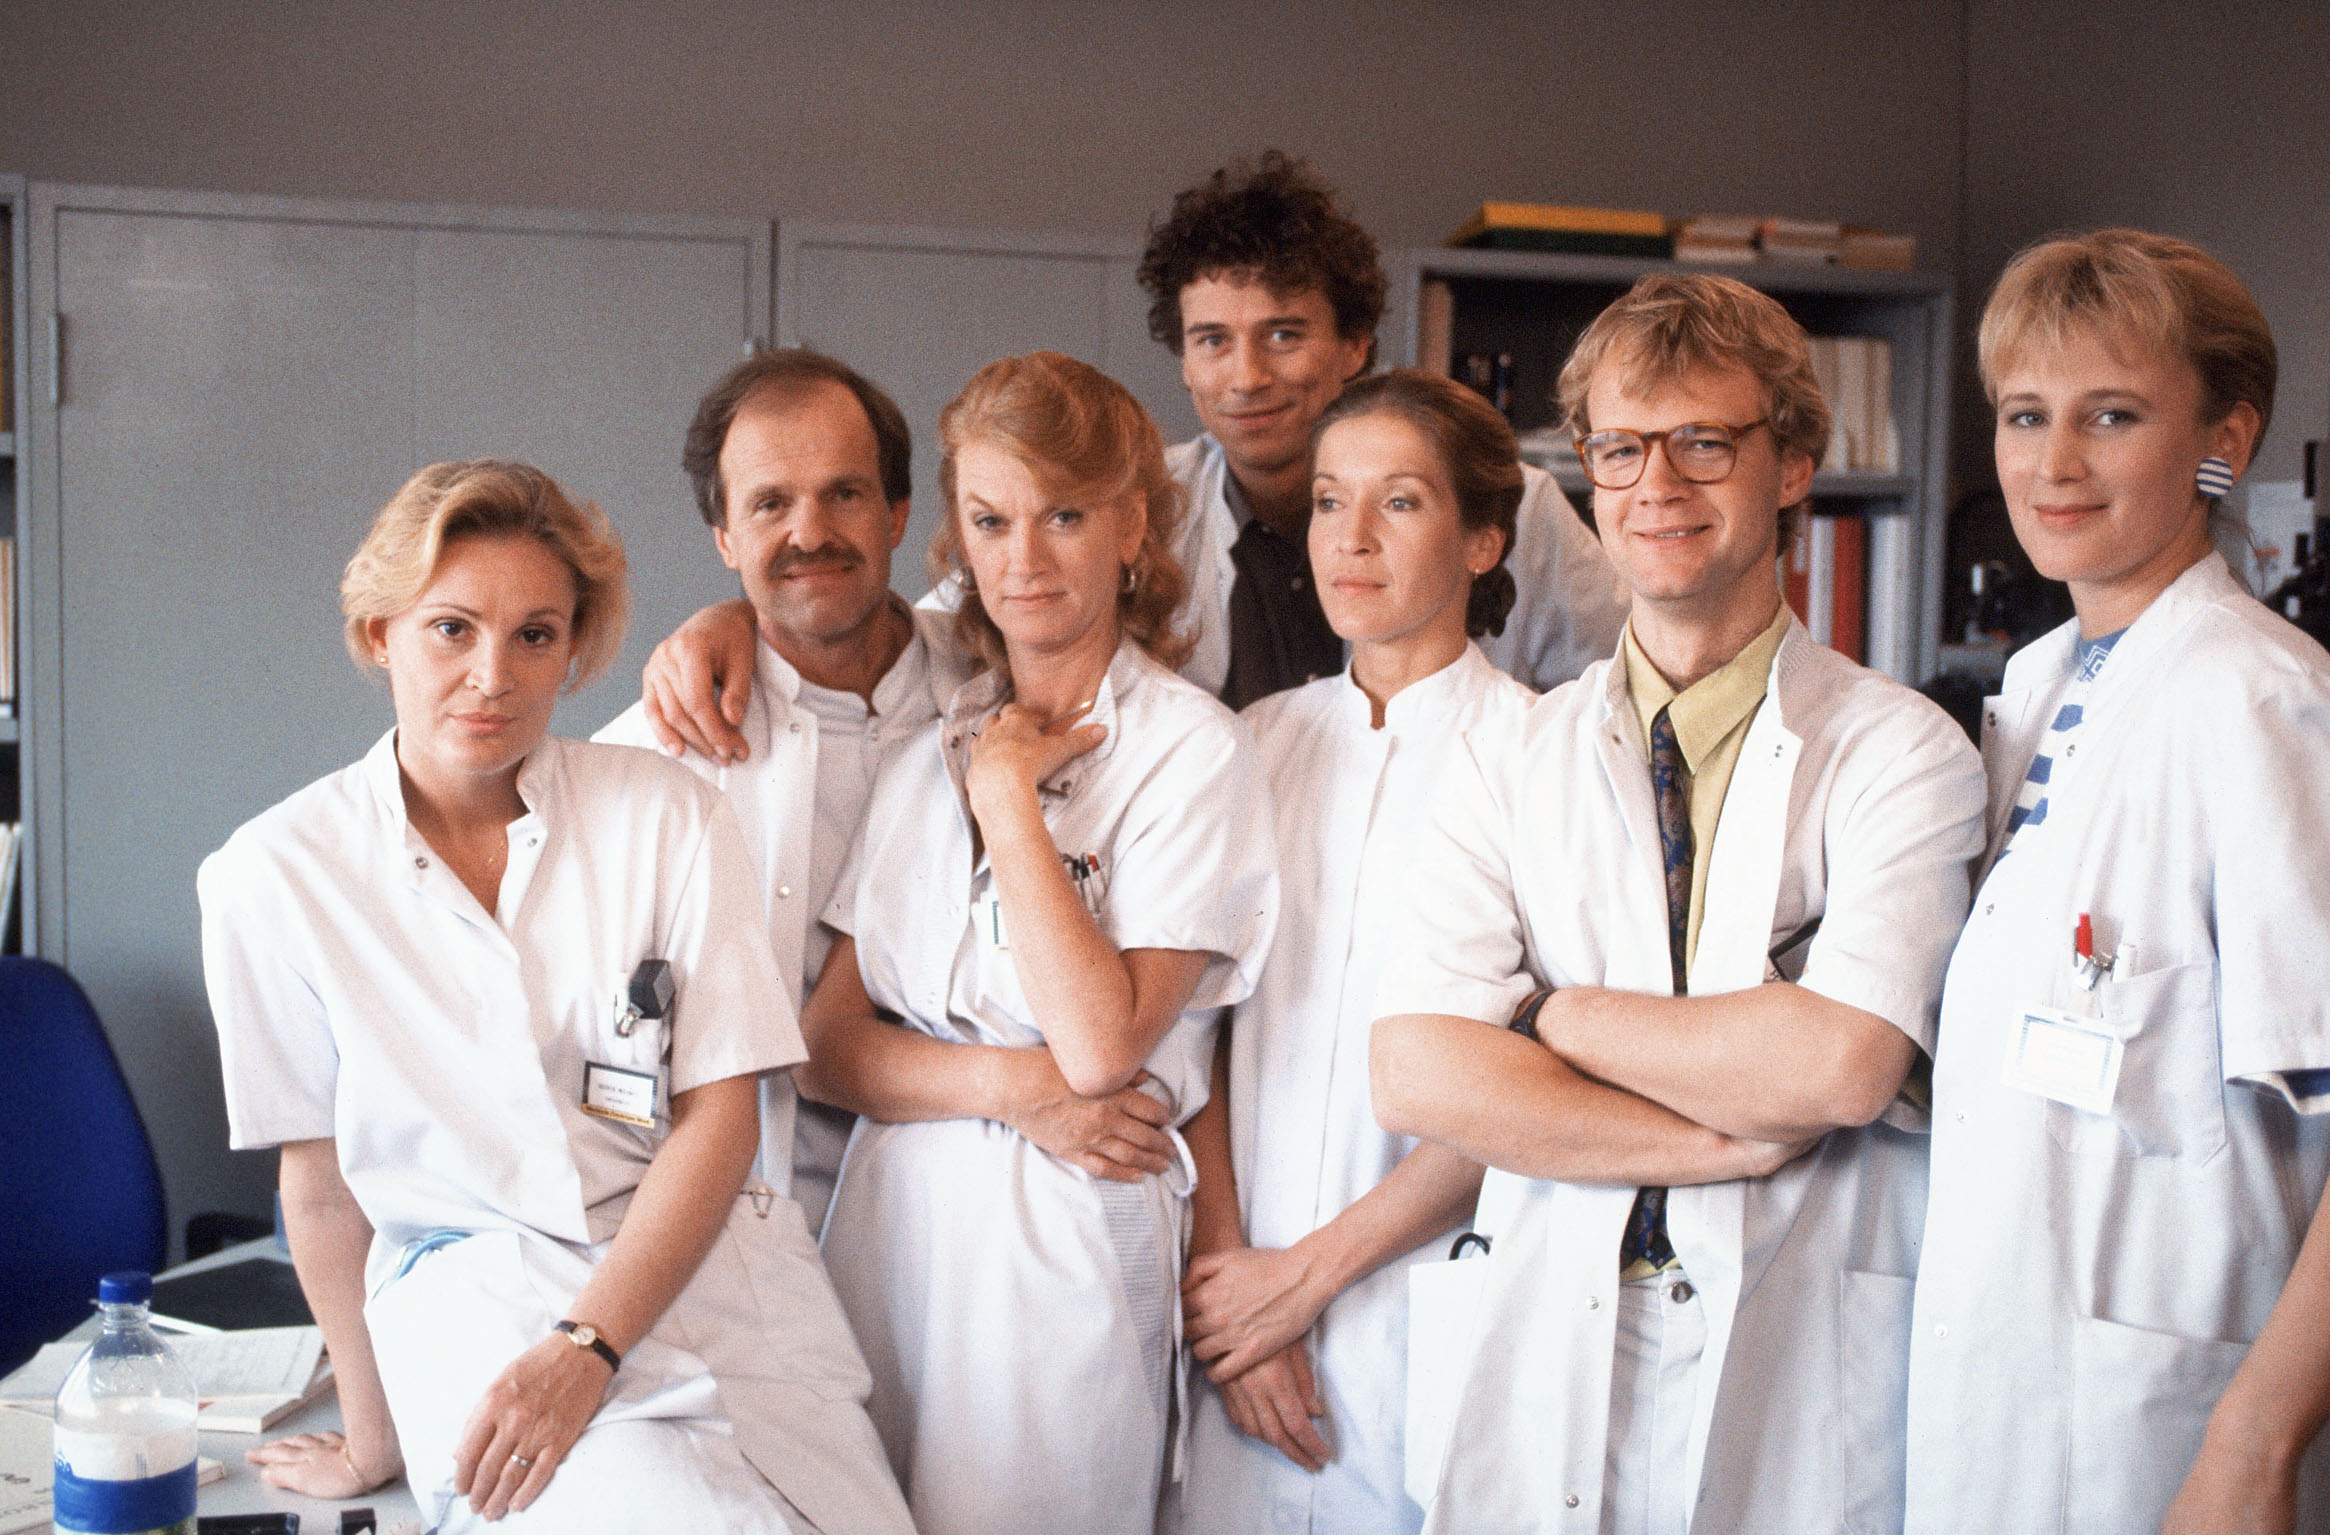 De cast van Medisch Centrum West in 1991. Van links naar rechts: dokter Astrid (Guusje Eijbers), internist Dick (Klaas Hofstra), zuster Reini (Margreet Blanken), dokter Jan (Marc Klein Essink), sociaal-verpleegkundige Nelleke (Marianne Vloetgraven), dokter Eric (Rob van Hulst) en dokter Liza (Anja Winter). Foto: ANP